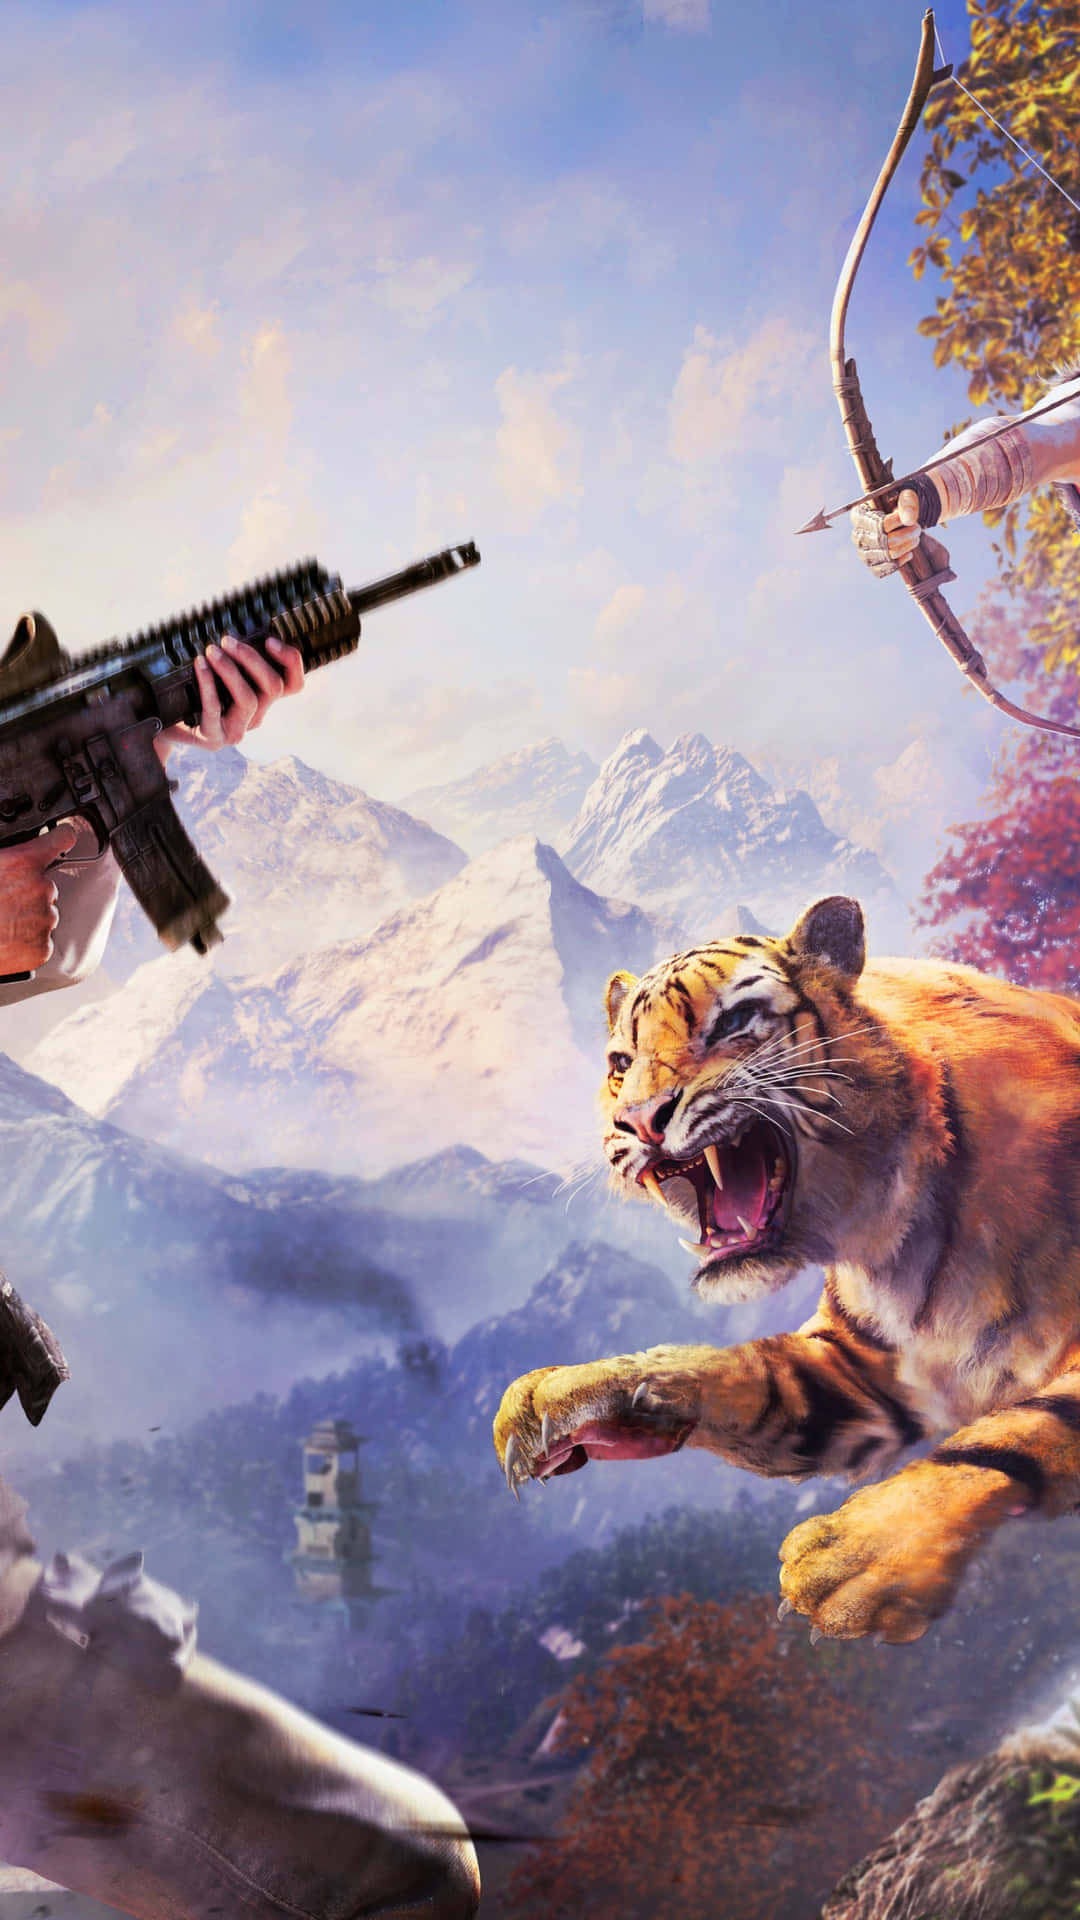 Entreem Um Mundo Emocionante De Aventura E Explore Kyrat Com Far Cry 4. Papel de Parede